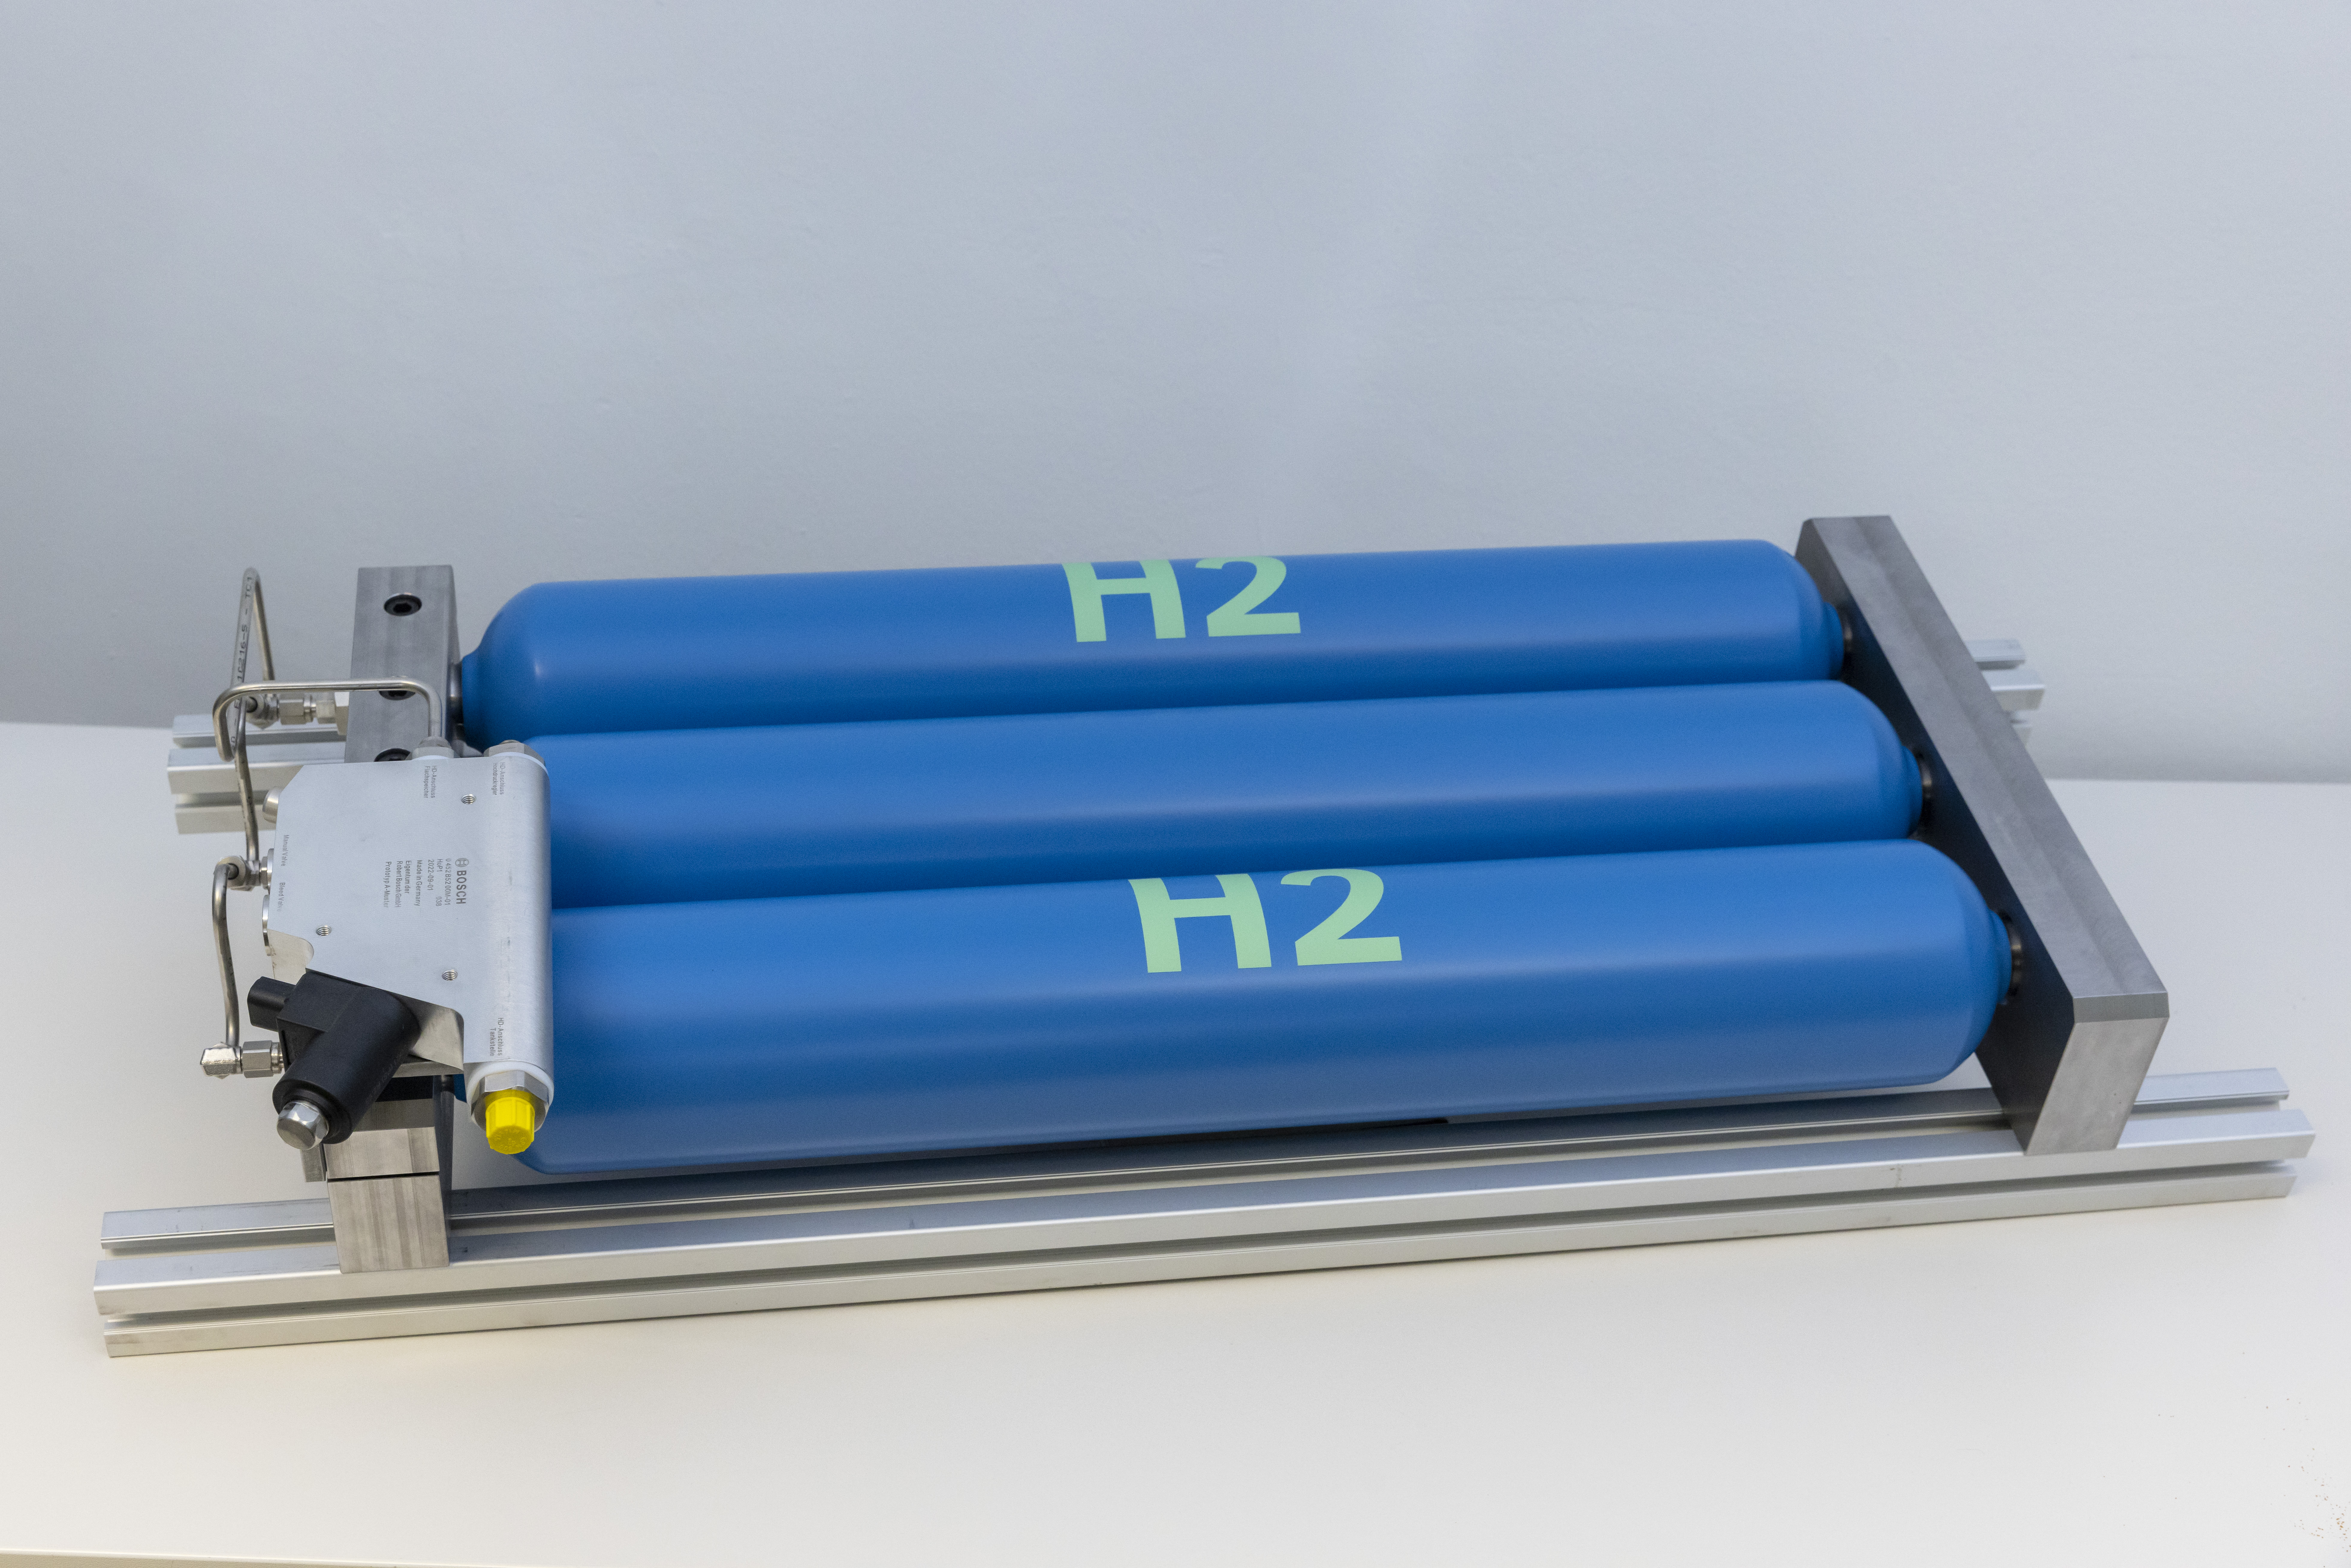 Wasserstofftank – innovative platzsparende Lösung für Pkw